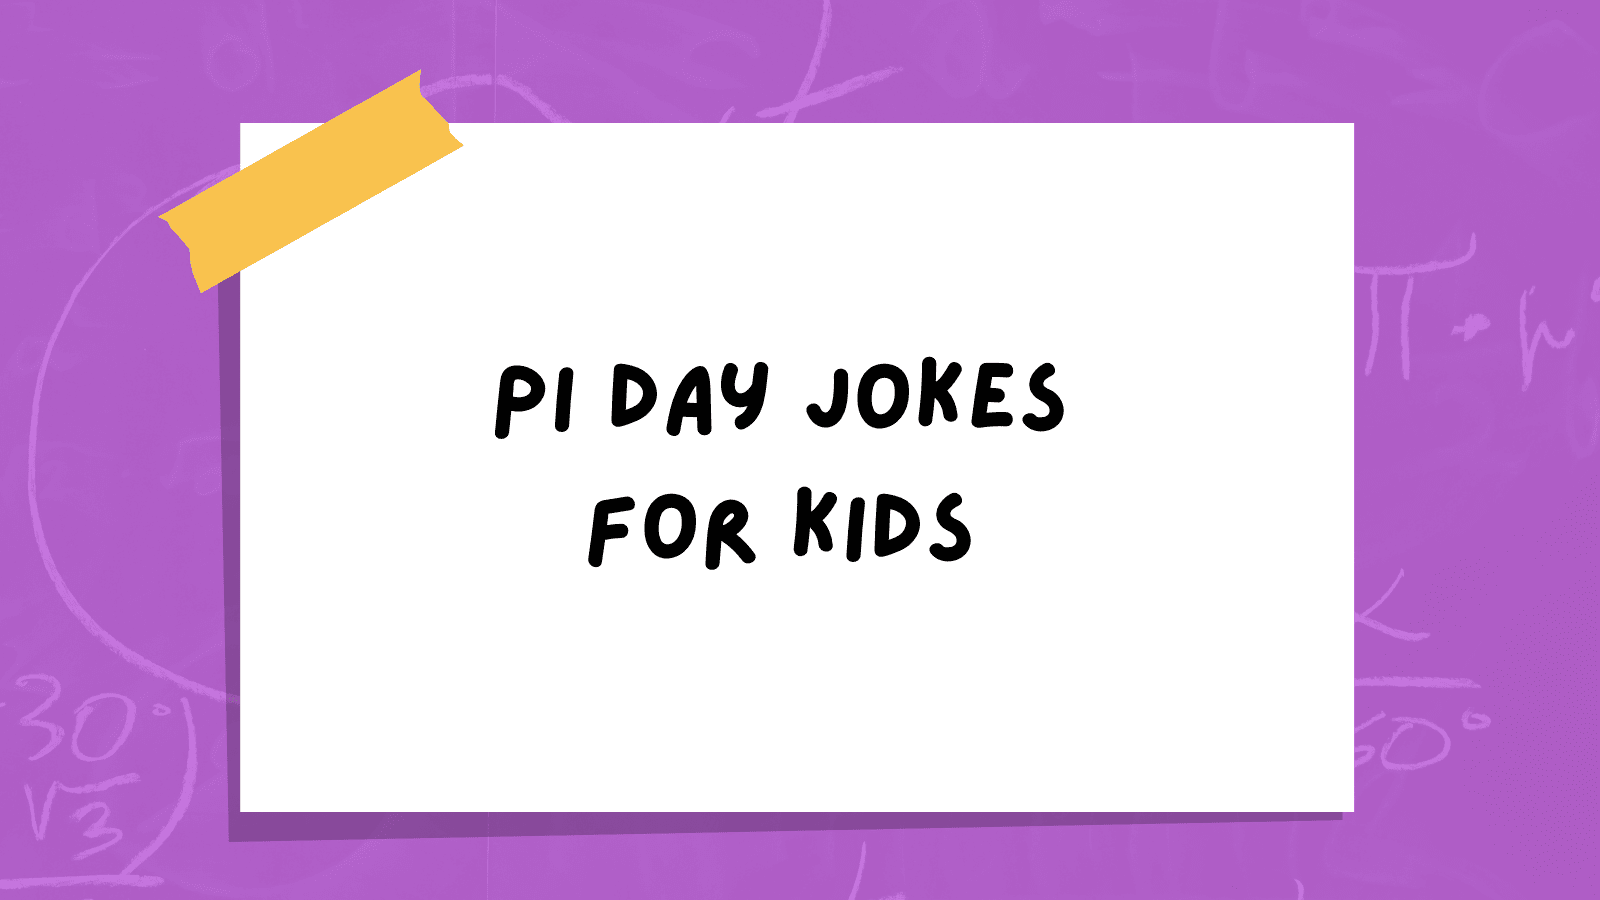 Pi Day jokes for kids.